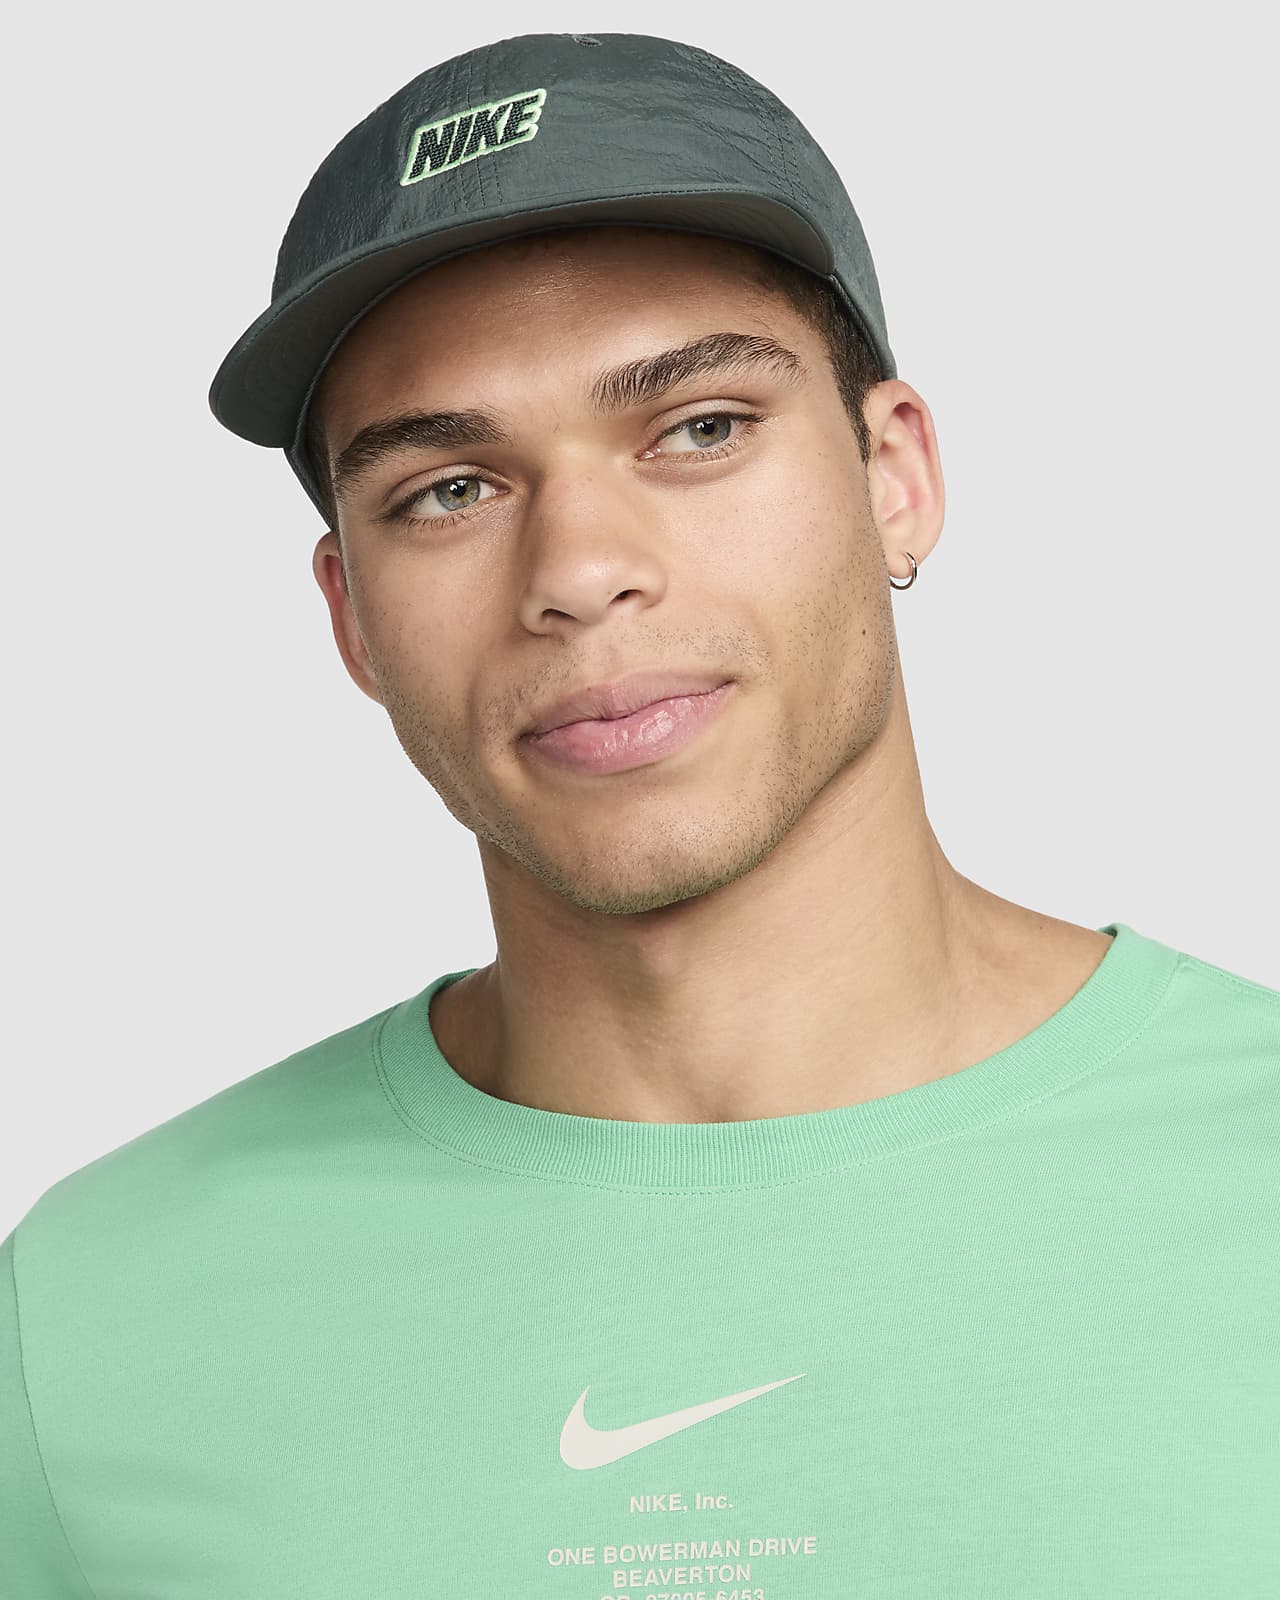 Nike Club 软顶平整帽檐户外运动帽